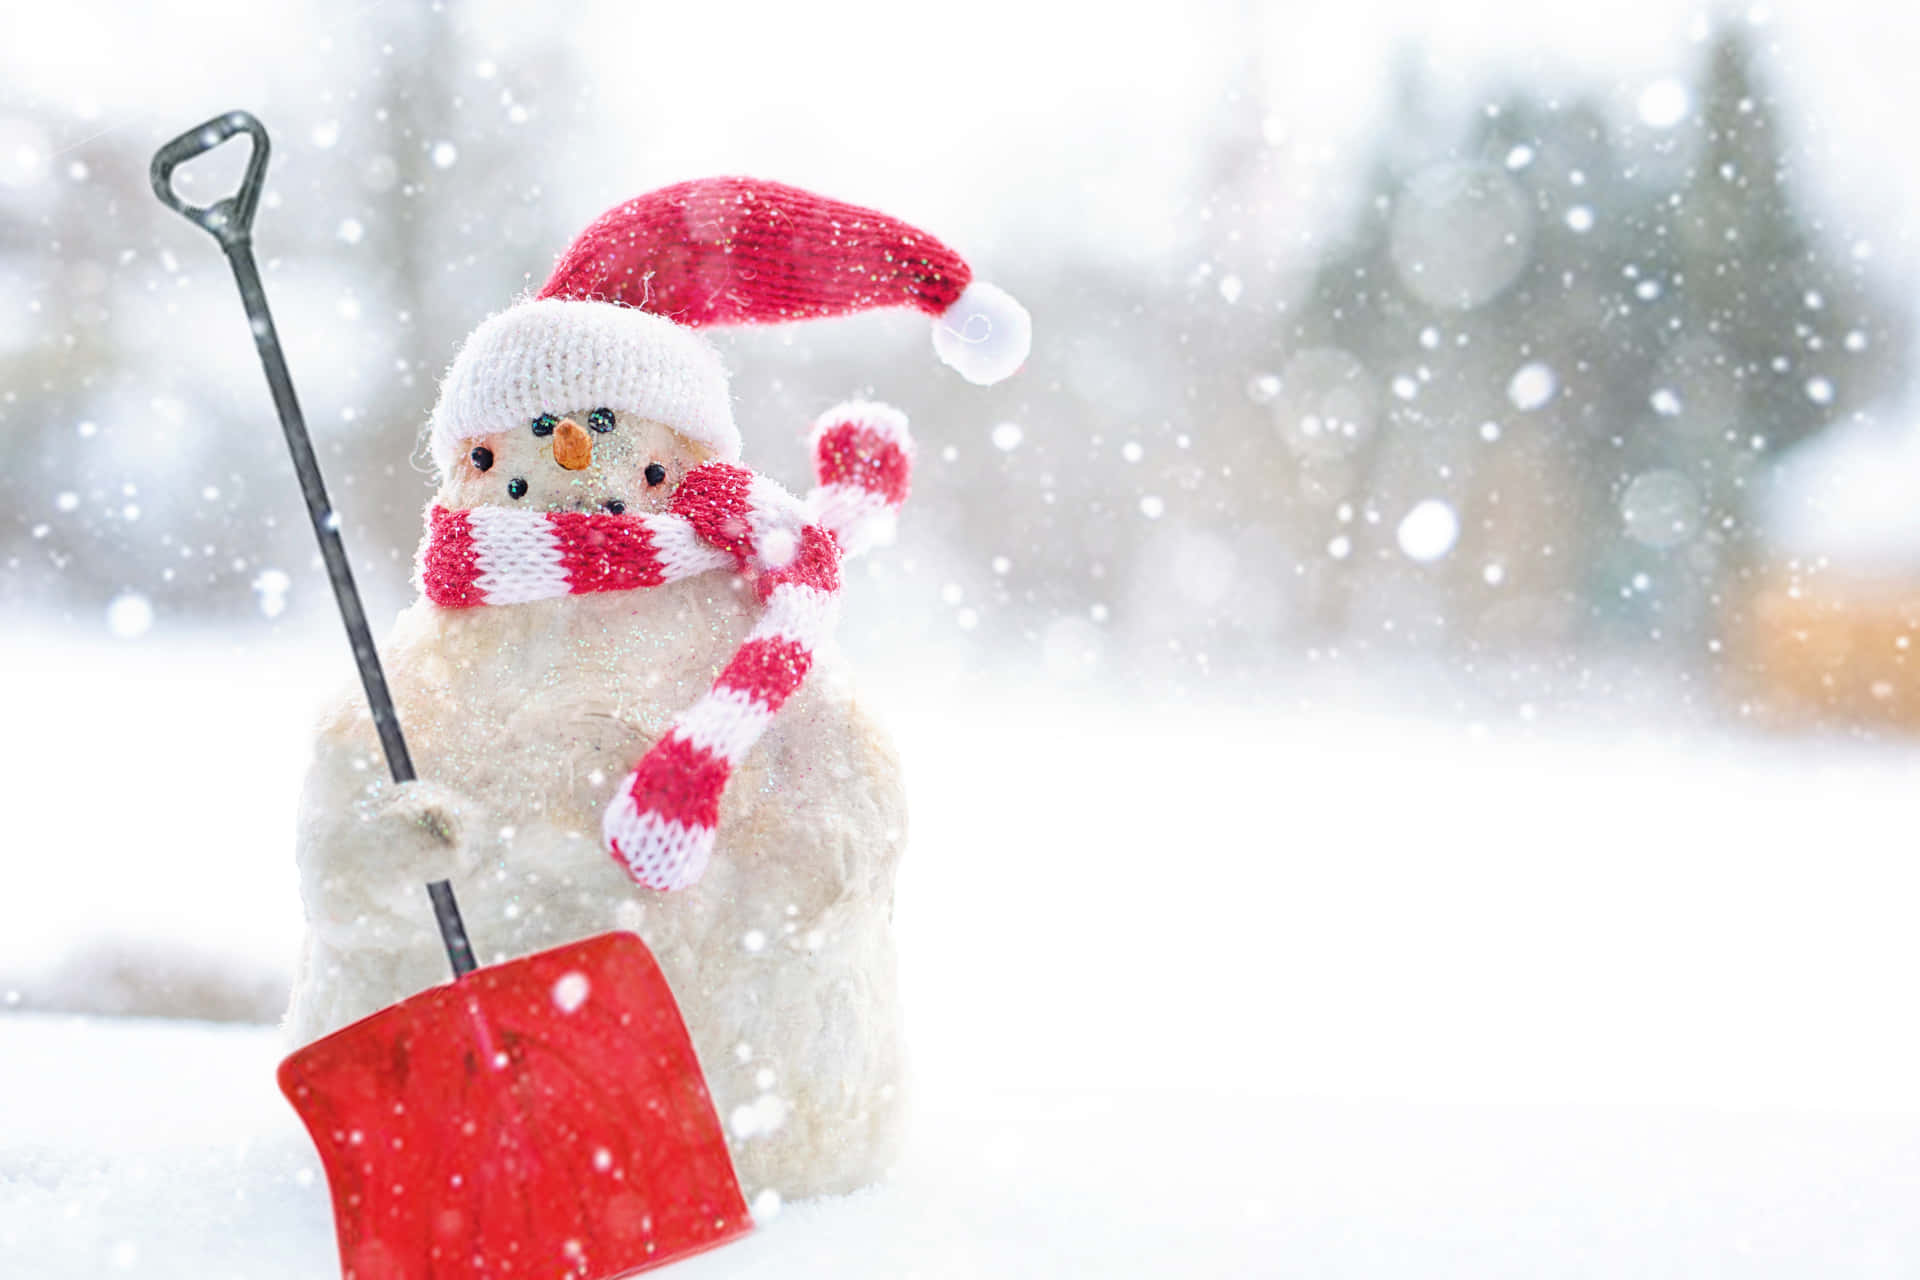 Nyd et fredeligt vinterlandskab af blødt sne og festlige julelys. Wallpaper